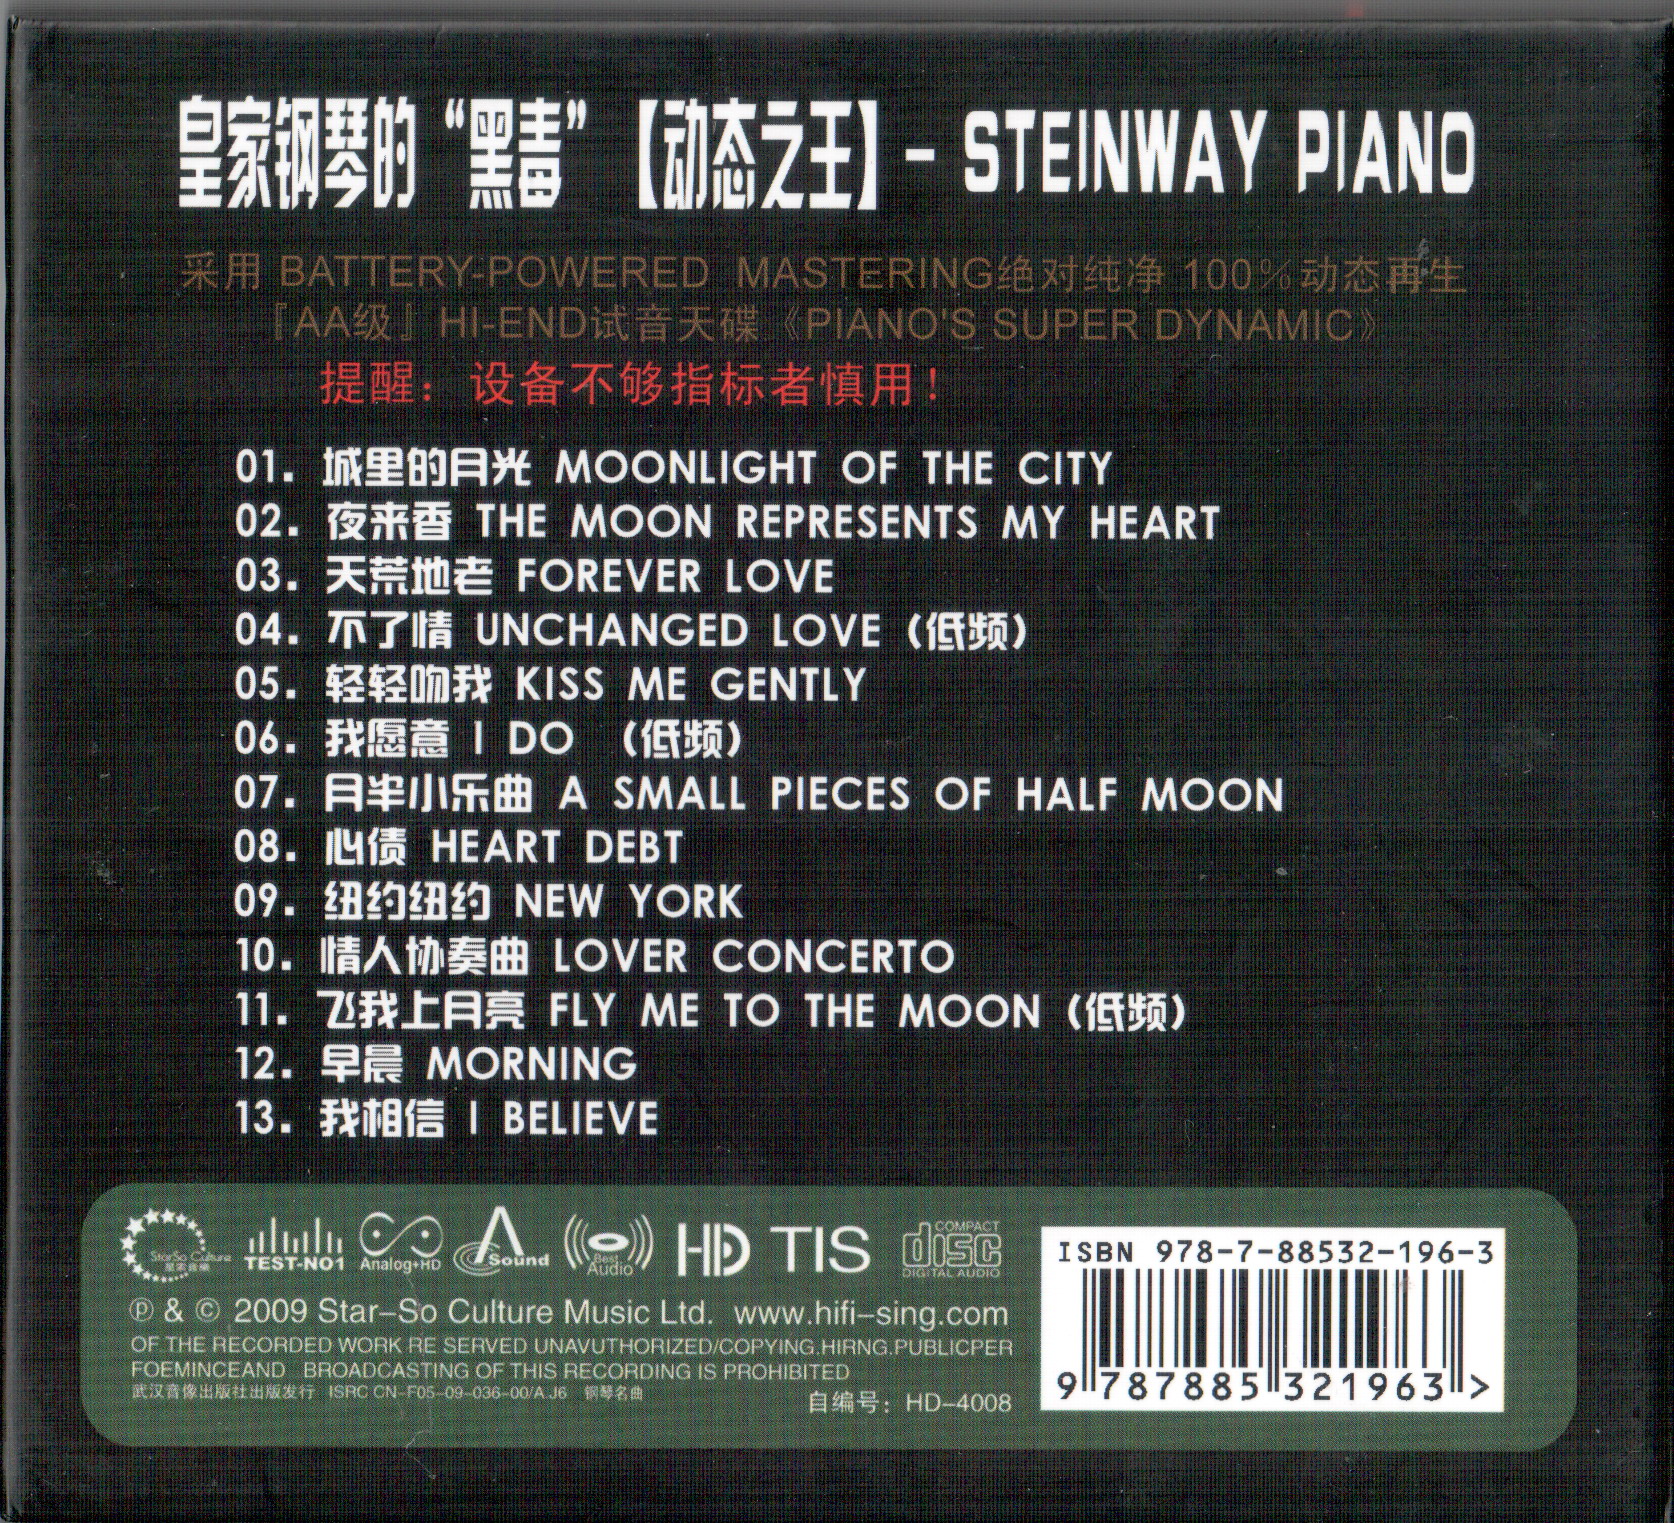 Steinway Piano - Black Magic - Ru Lai Shen Zhang (2).JPG